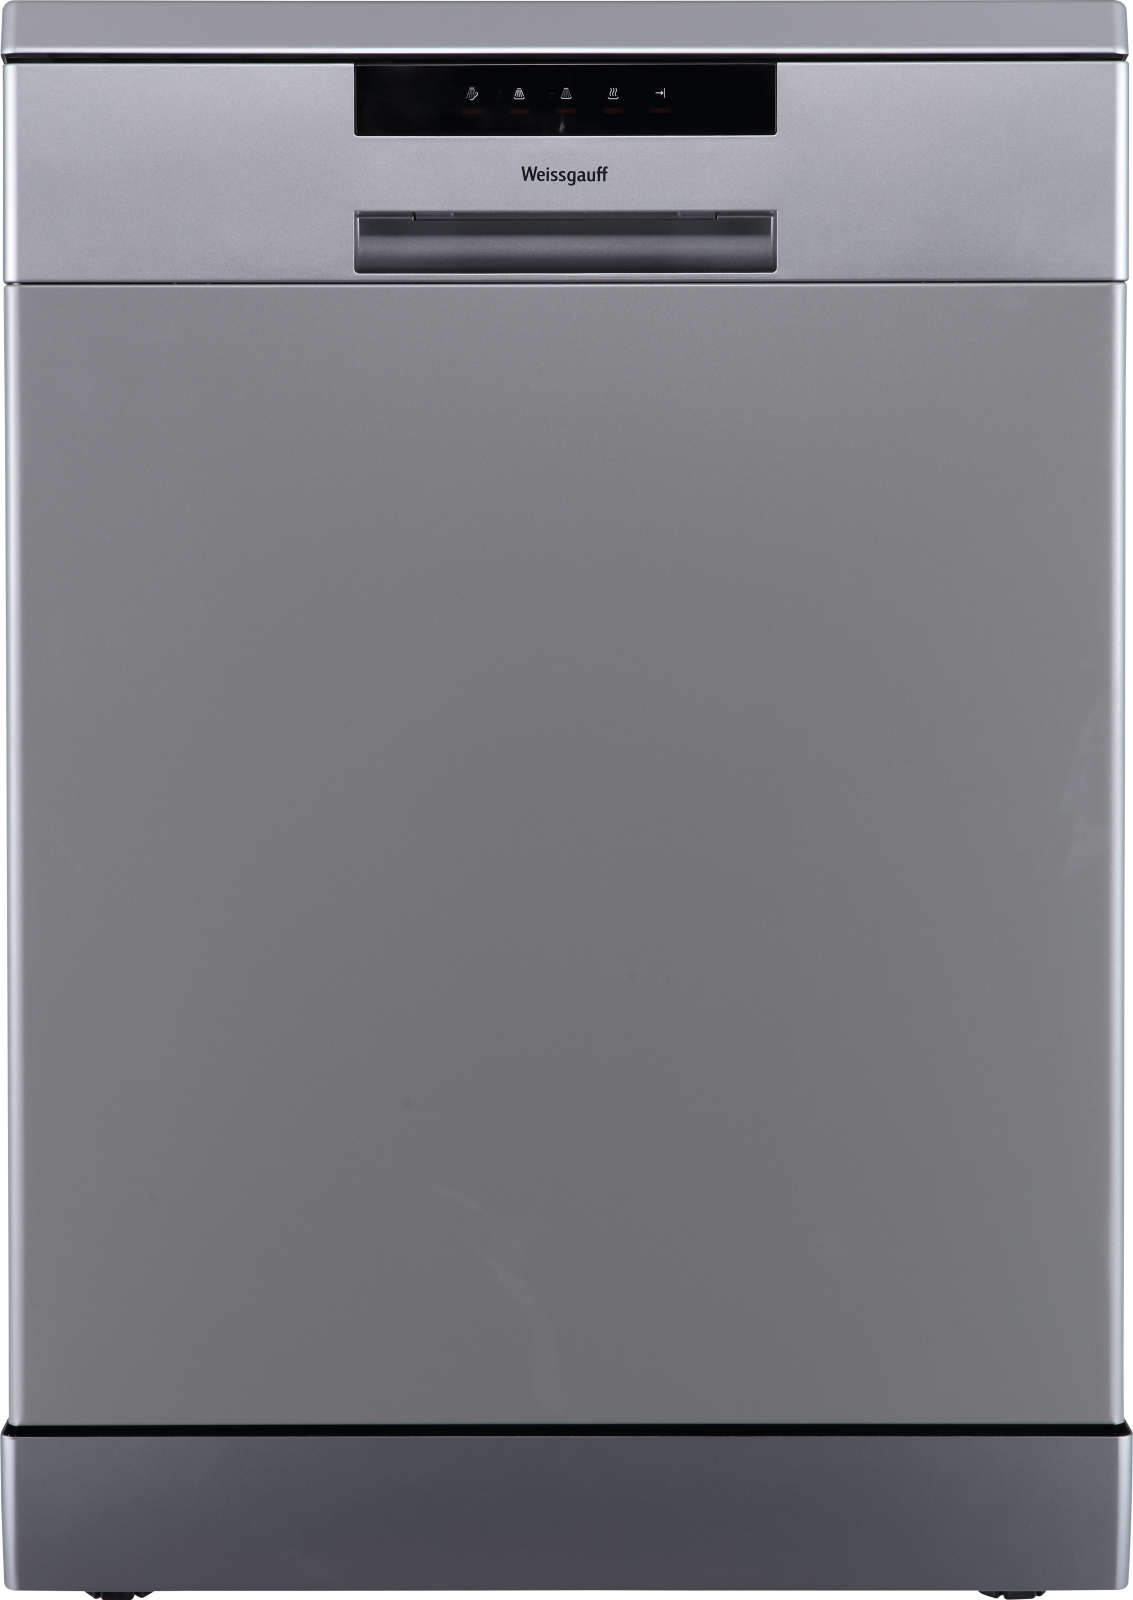 Посудомоечная машина Weissgauff DW 6013 Inox серебристый компактная посудомоечная машина weissgauff tdw 4017 d